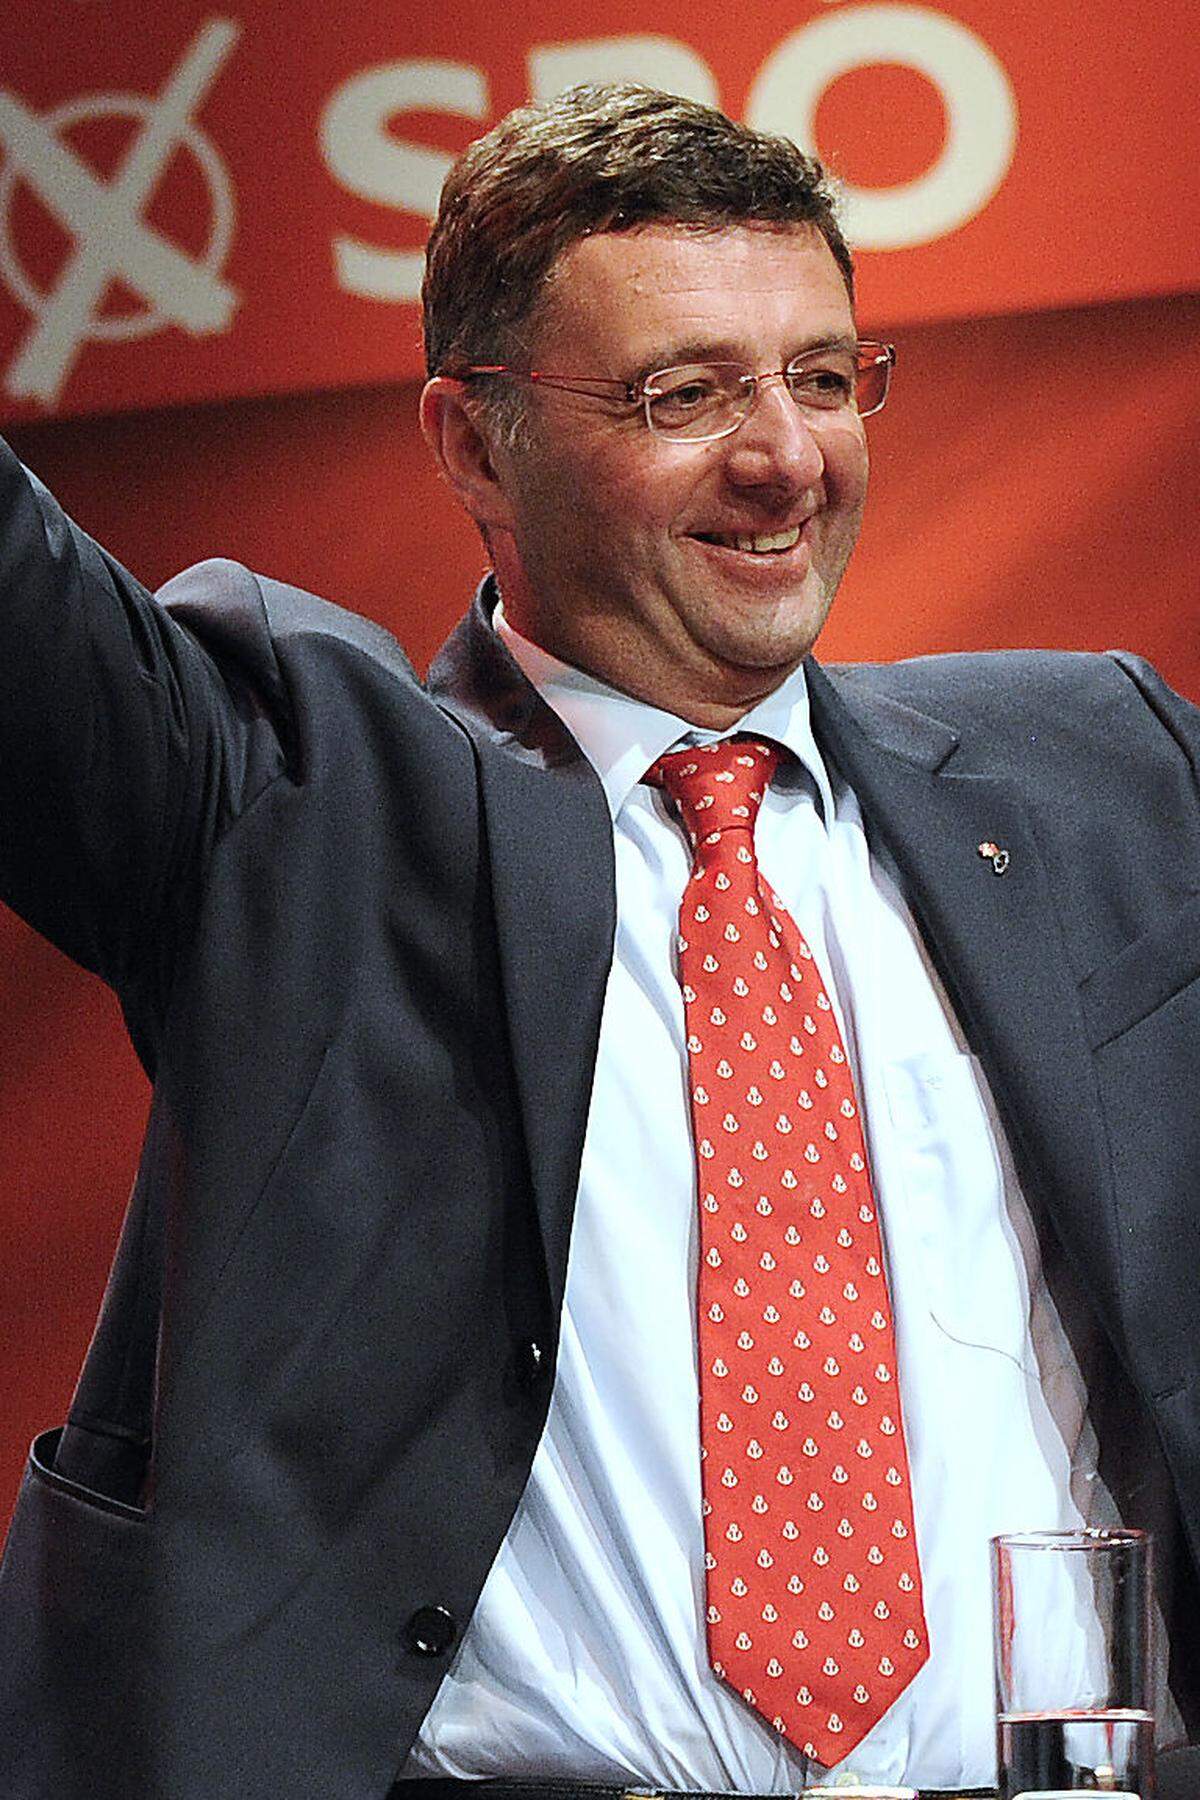 Der Steirer und SPÖ-Delegationsleiter Jörg Leichtfried ist seit 2004 im EU-Parlament. Der 46-Jährige gilt als Verkehrsexperte und setzte sich erfolgreich gegen freie Fahrt für Gigaliner ein. Er verfasste seit 2009 acht Berichte für das Parlament und nahm an 91 Prozent der Abstimmungen teil.